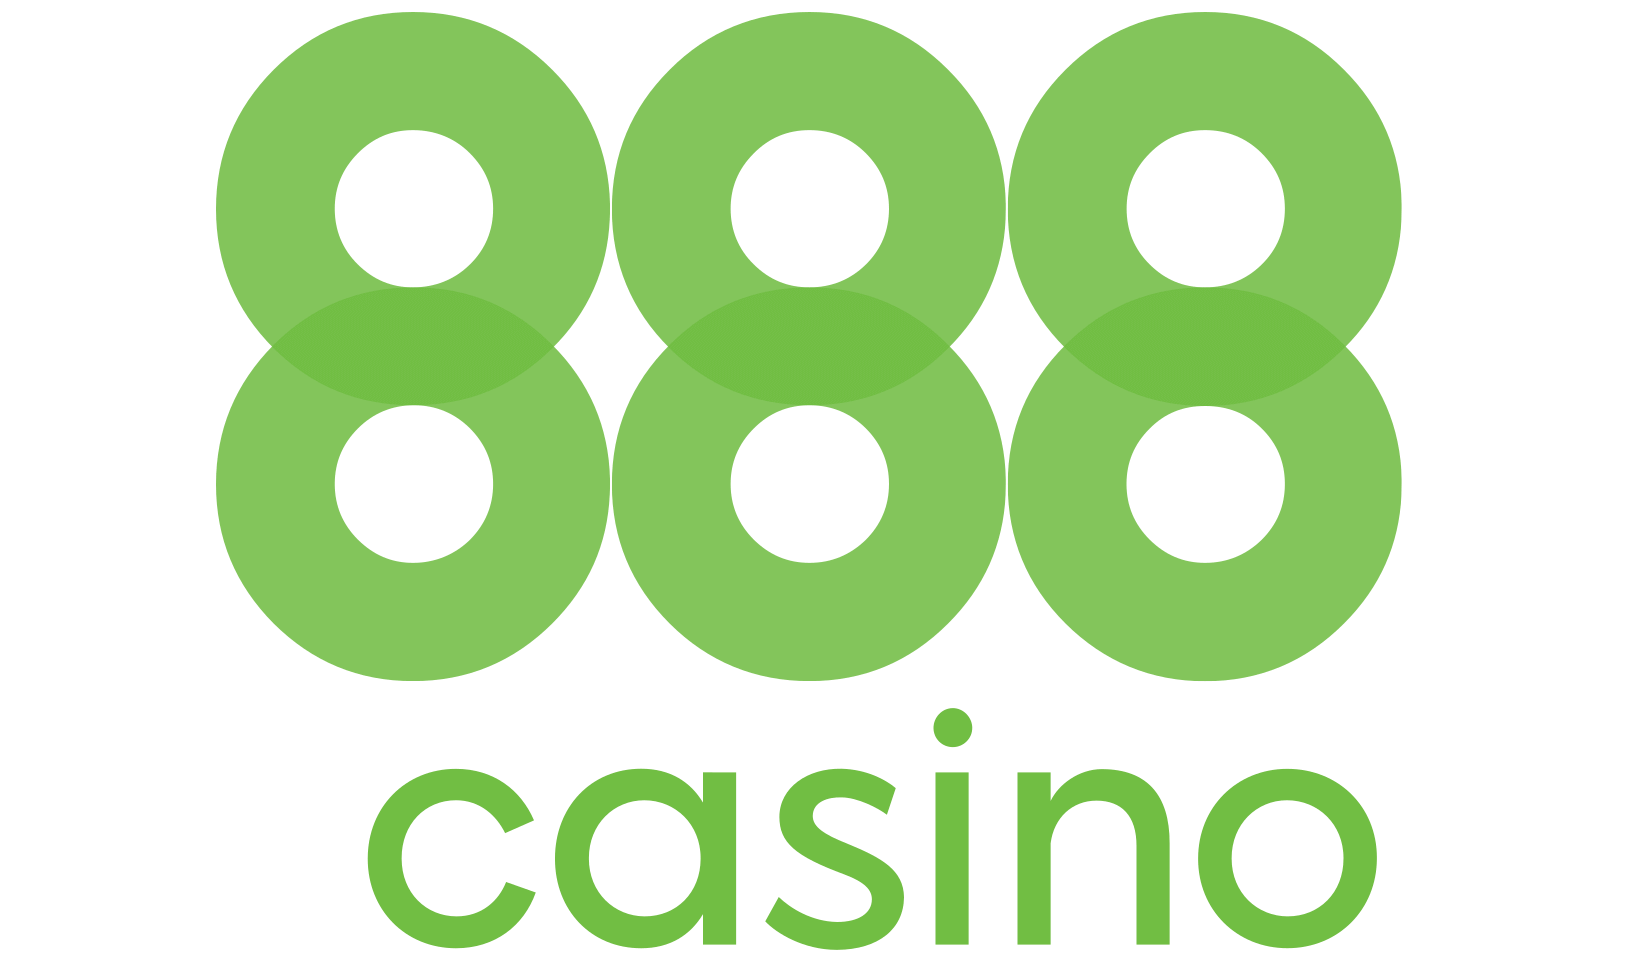 888 Casino no deposit bonus